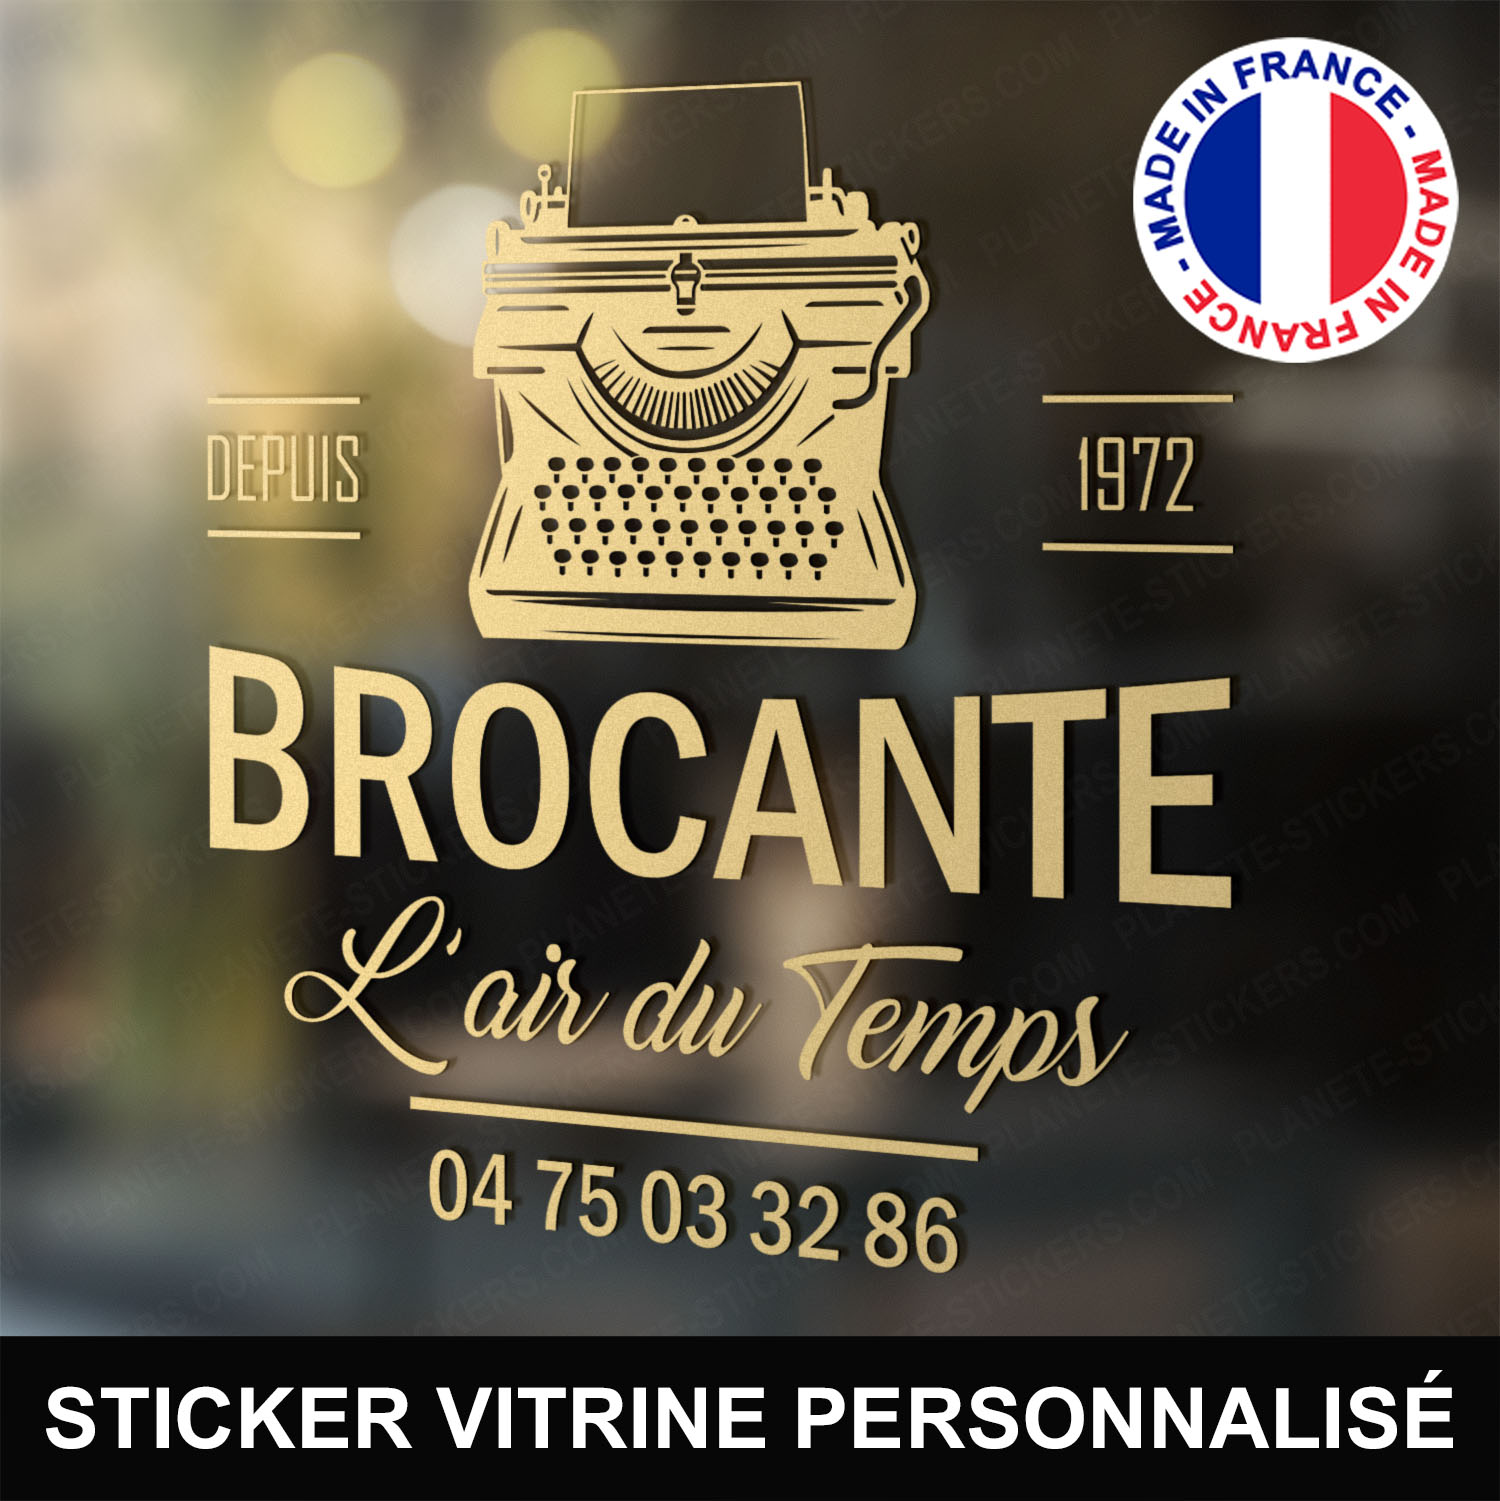 ref8brocantevitrine-stickers-brocante-vitrine-sticker-brocanteur-vitrophanie-personnalisé-autocollant-pro-magasin-boutique-vitre-logo-machine-à-écrire